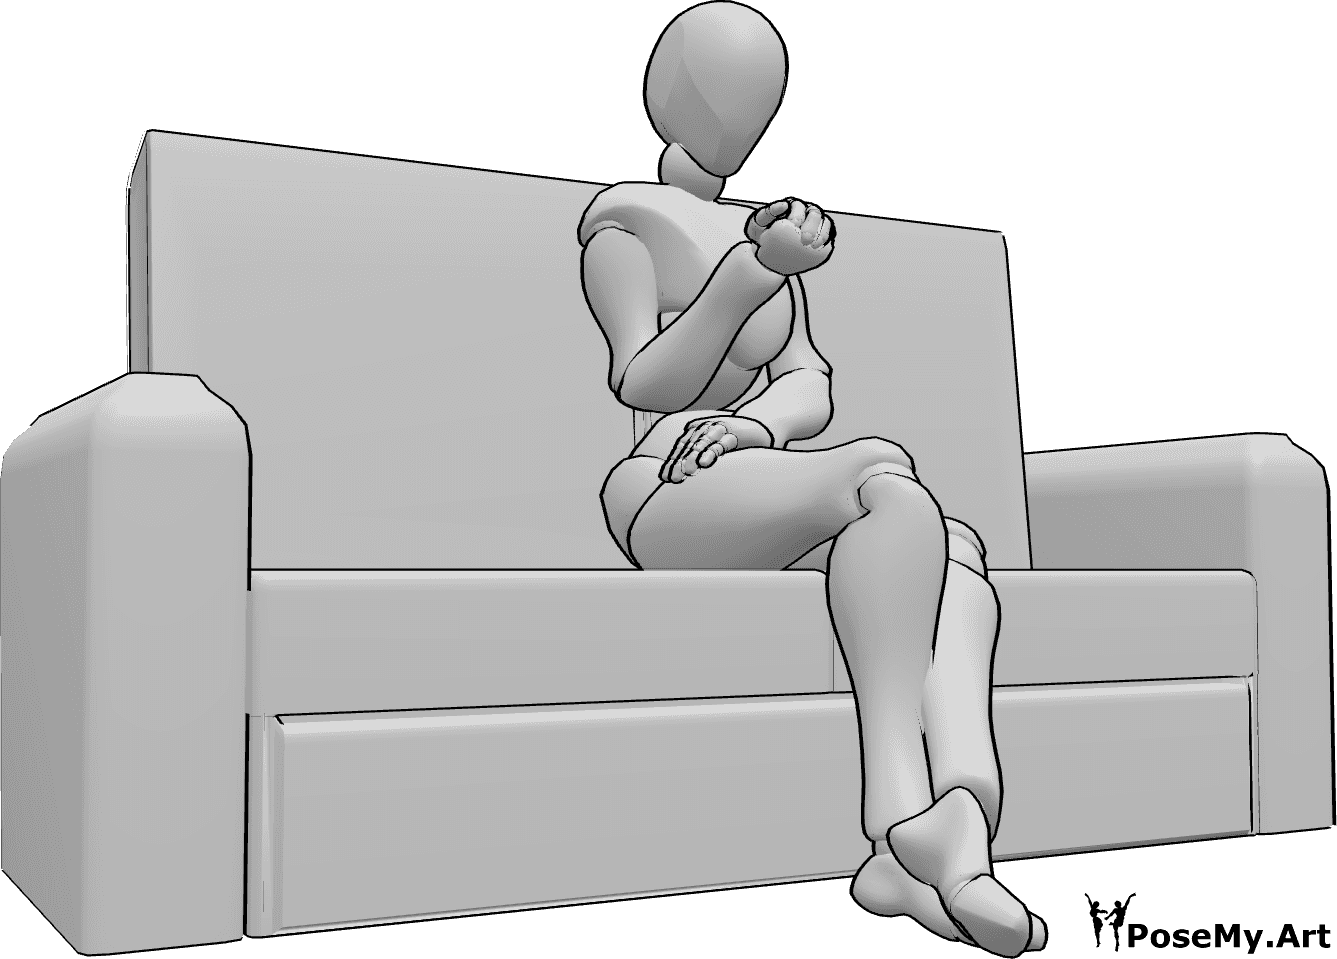 Referência de poses- Mulher sentada em pose de espera - A mulher está sentada no sofá com as pernas cruzadas, à espera de algo, a olhar para as unhas